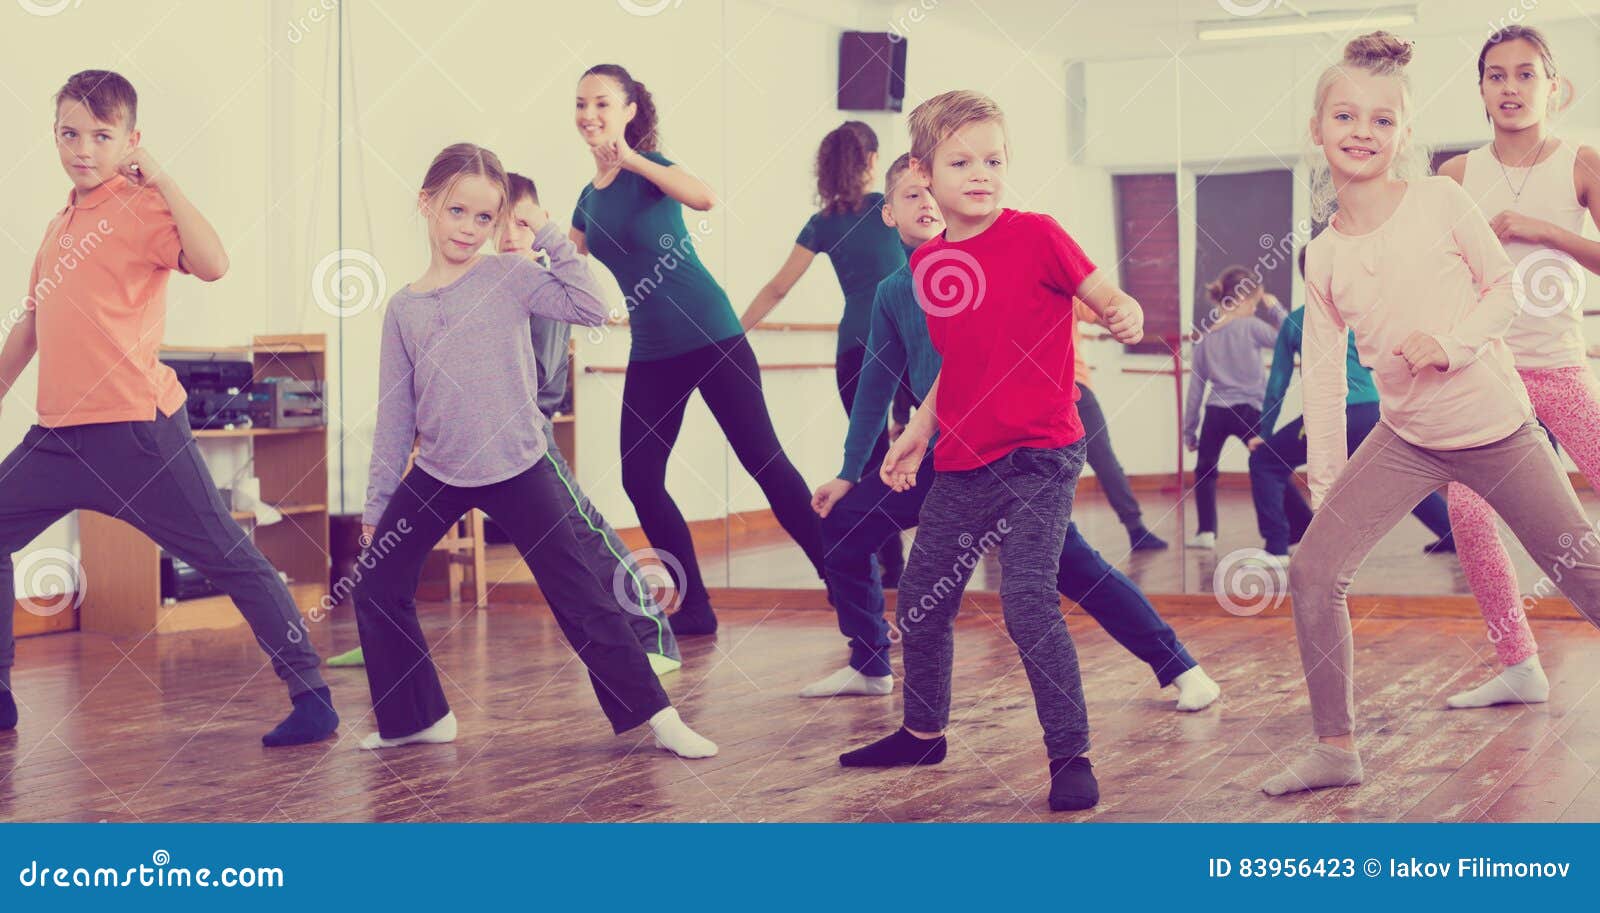 idioma interferencia hecho Niños Que Estudian Danza Moderna Del Estilo Imagen de archivo - Imagen de  gimnasia, mudanza: 83956423